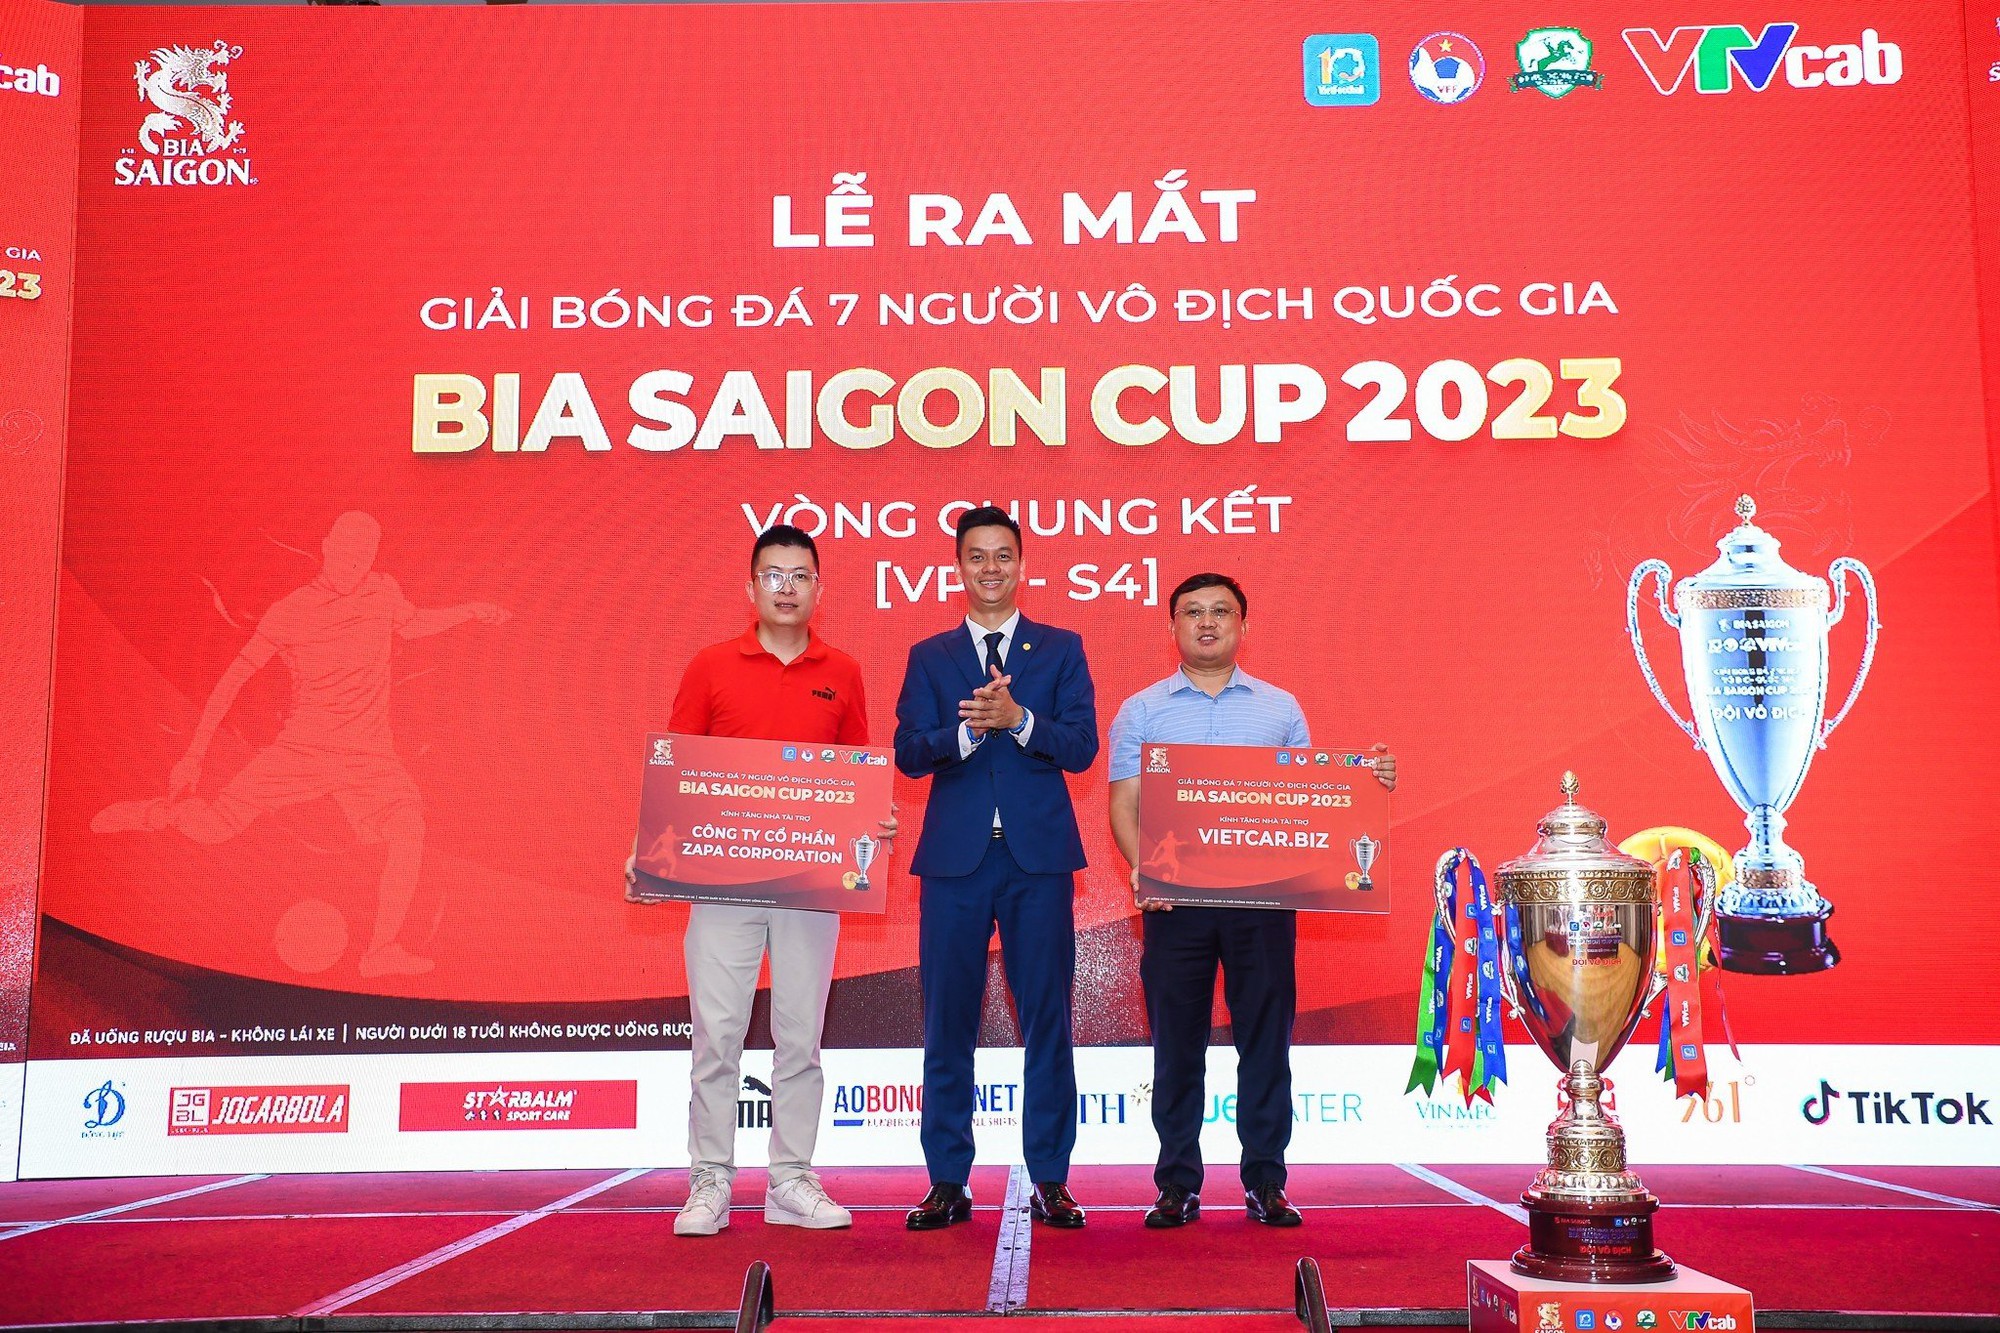 &quot;Bát hùng&quot; tranh tài tại VCK Giải bóng đá 7 người vô địch quốc gia - Bia Saigon Cup 2023  - Ảnh 4.